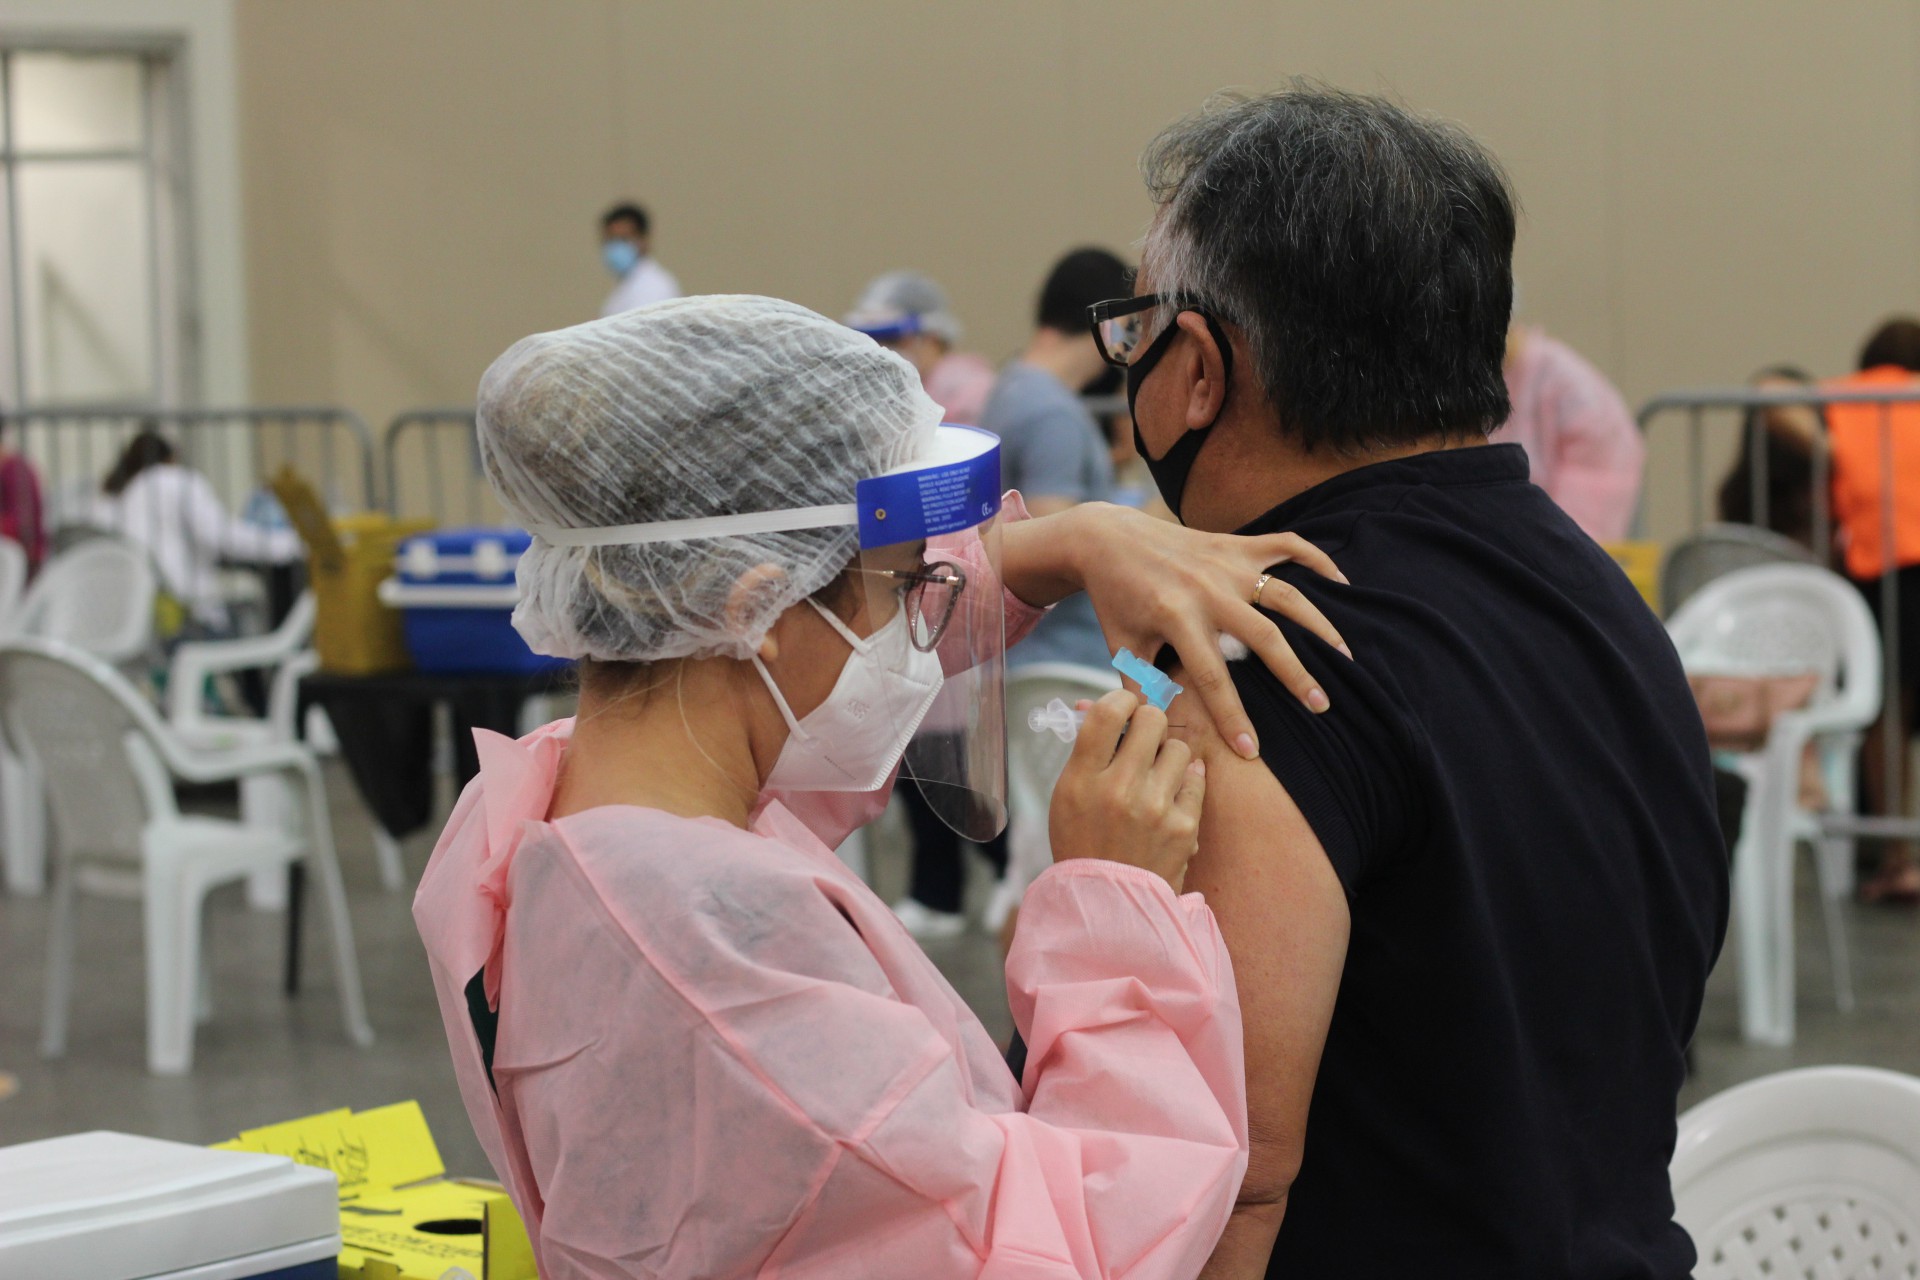 Centro de Eventos do Ceará recebeu profissionais da saúde para vacinação nesta segunda-feira, 25. (Foto: Deisa Garcêz/Especial para O Povo)